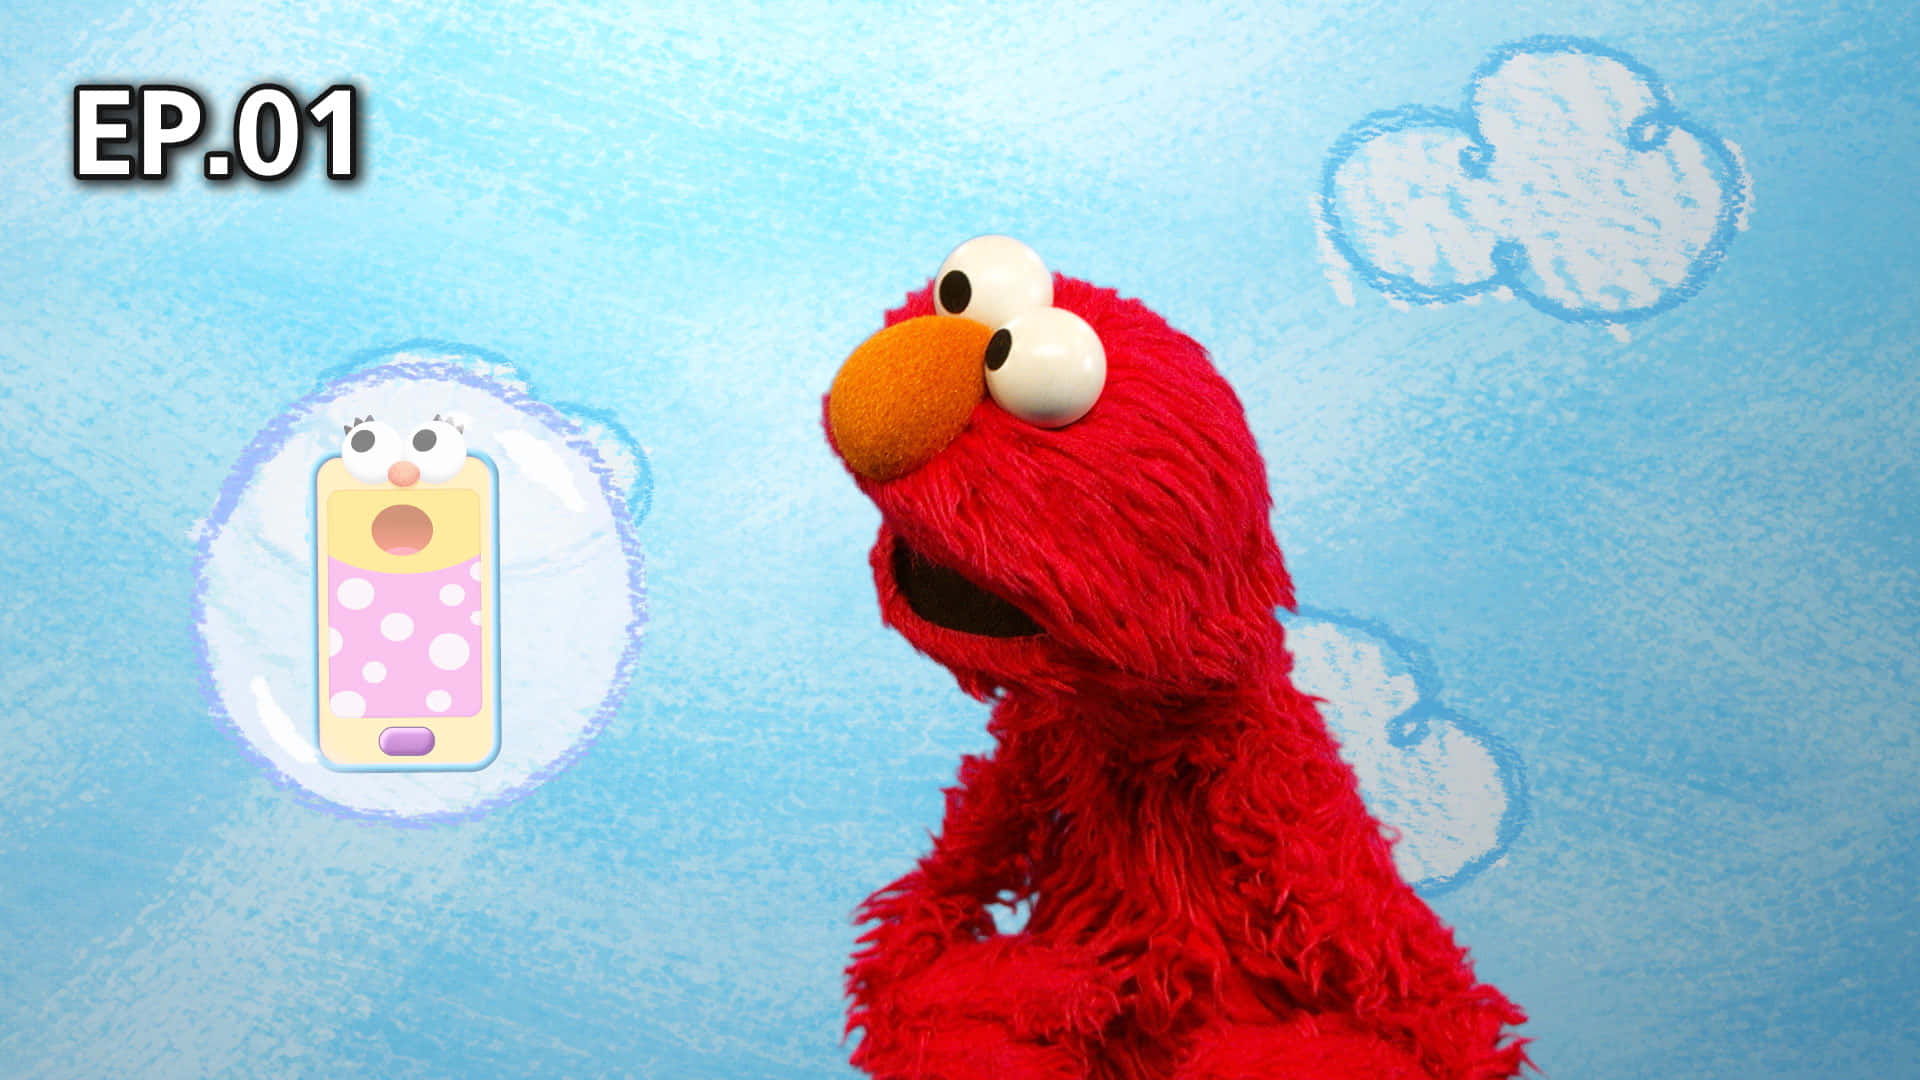 Step into Elmo's World!